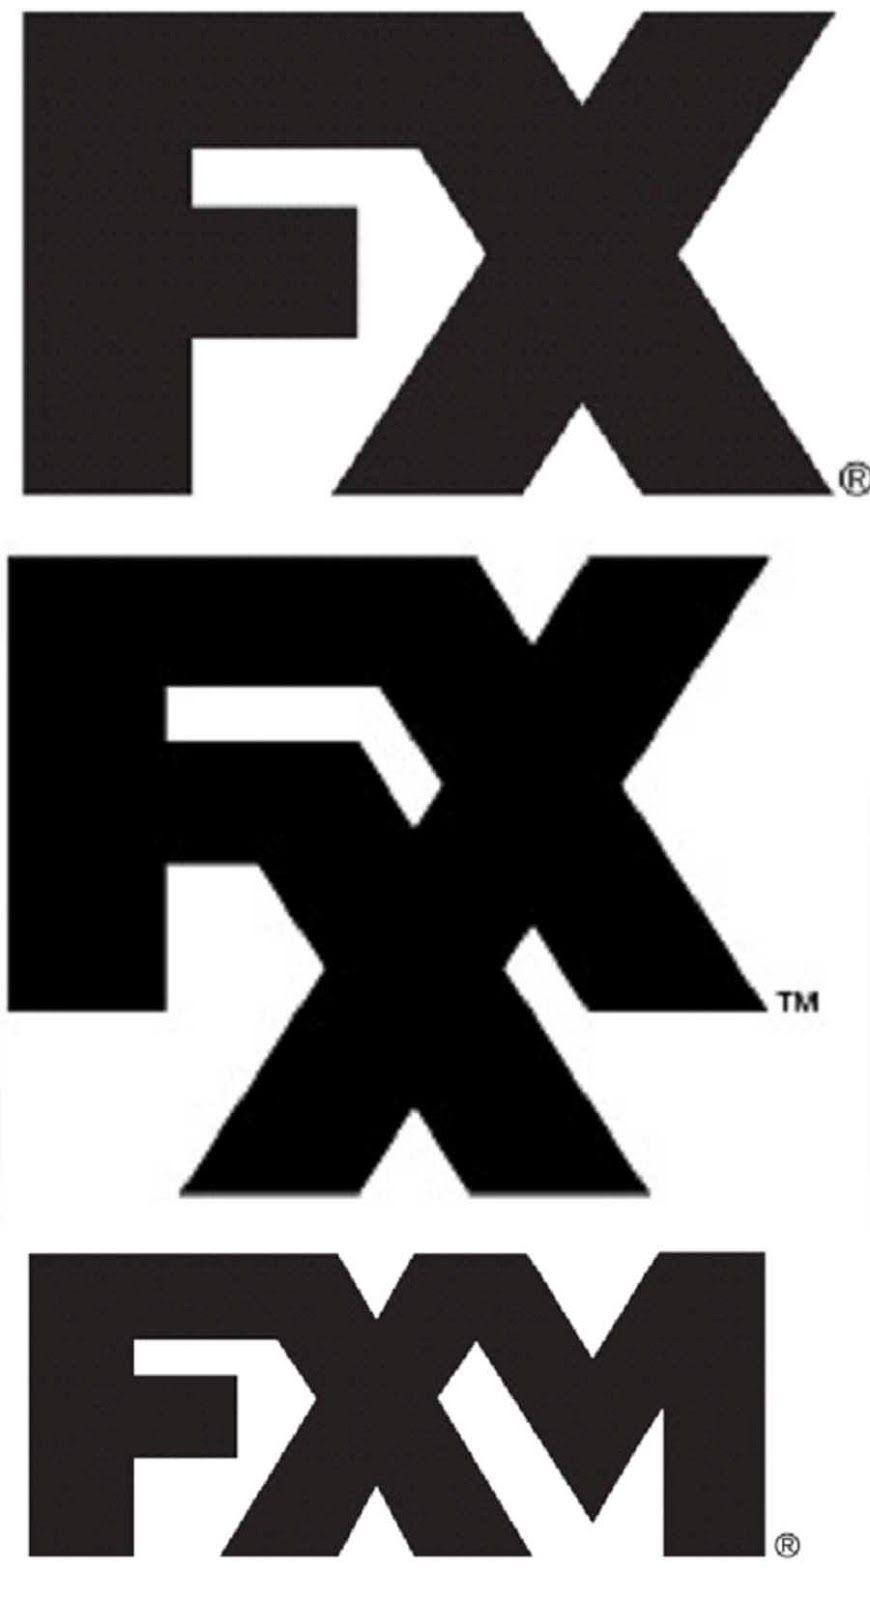 Fxm Logo - FX Expands Their Brand To Include FXX | Style601.com